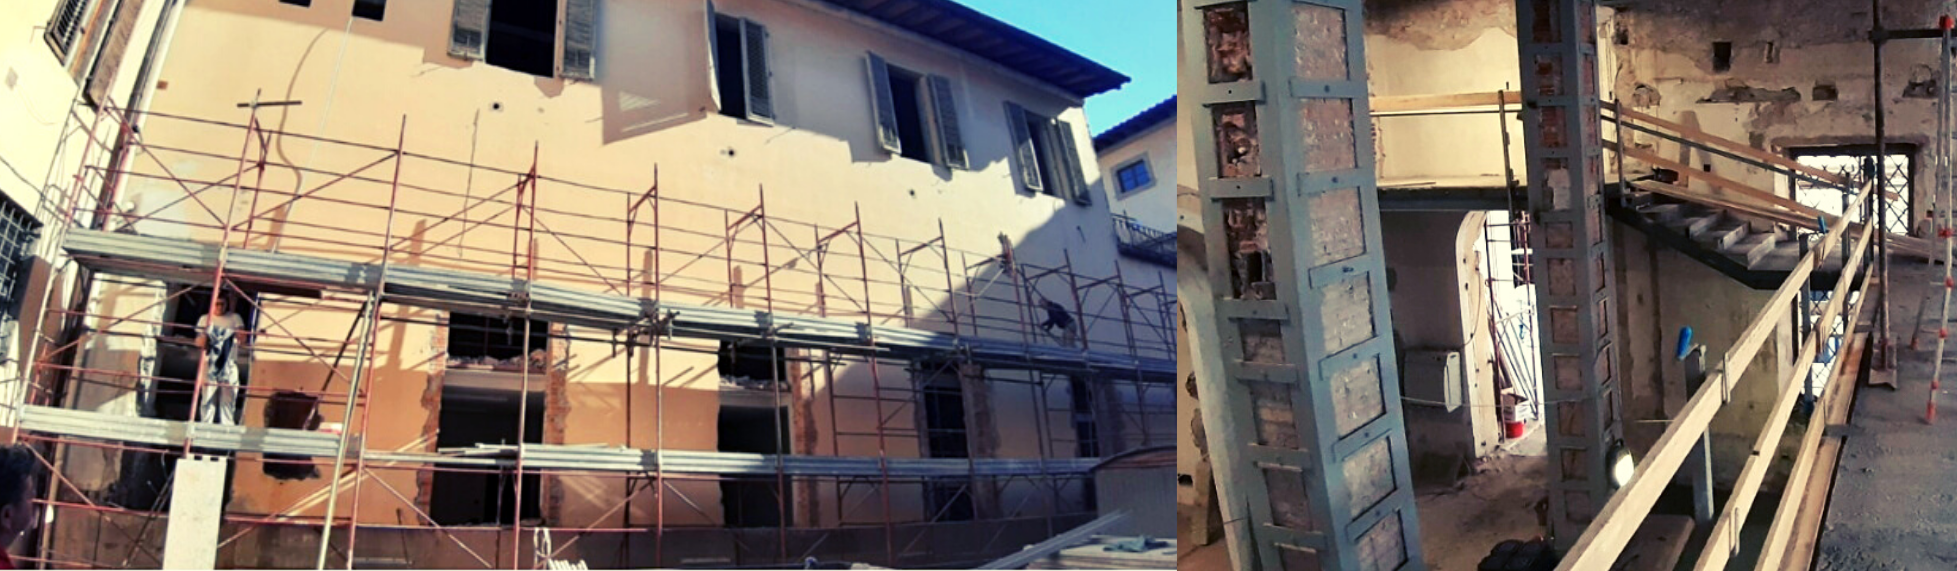 Palazzo Buontalenti_lavori in corso